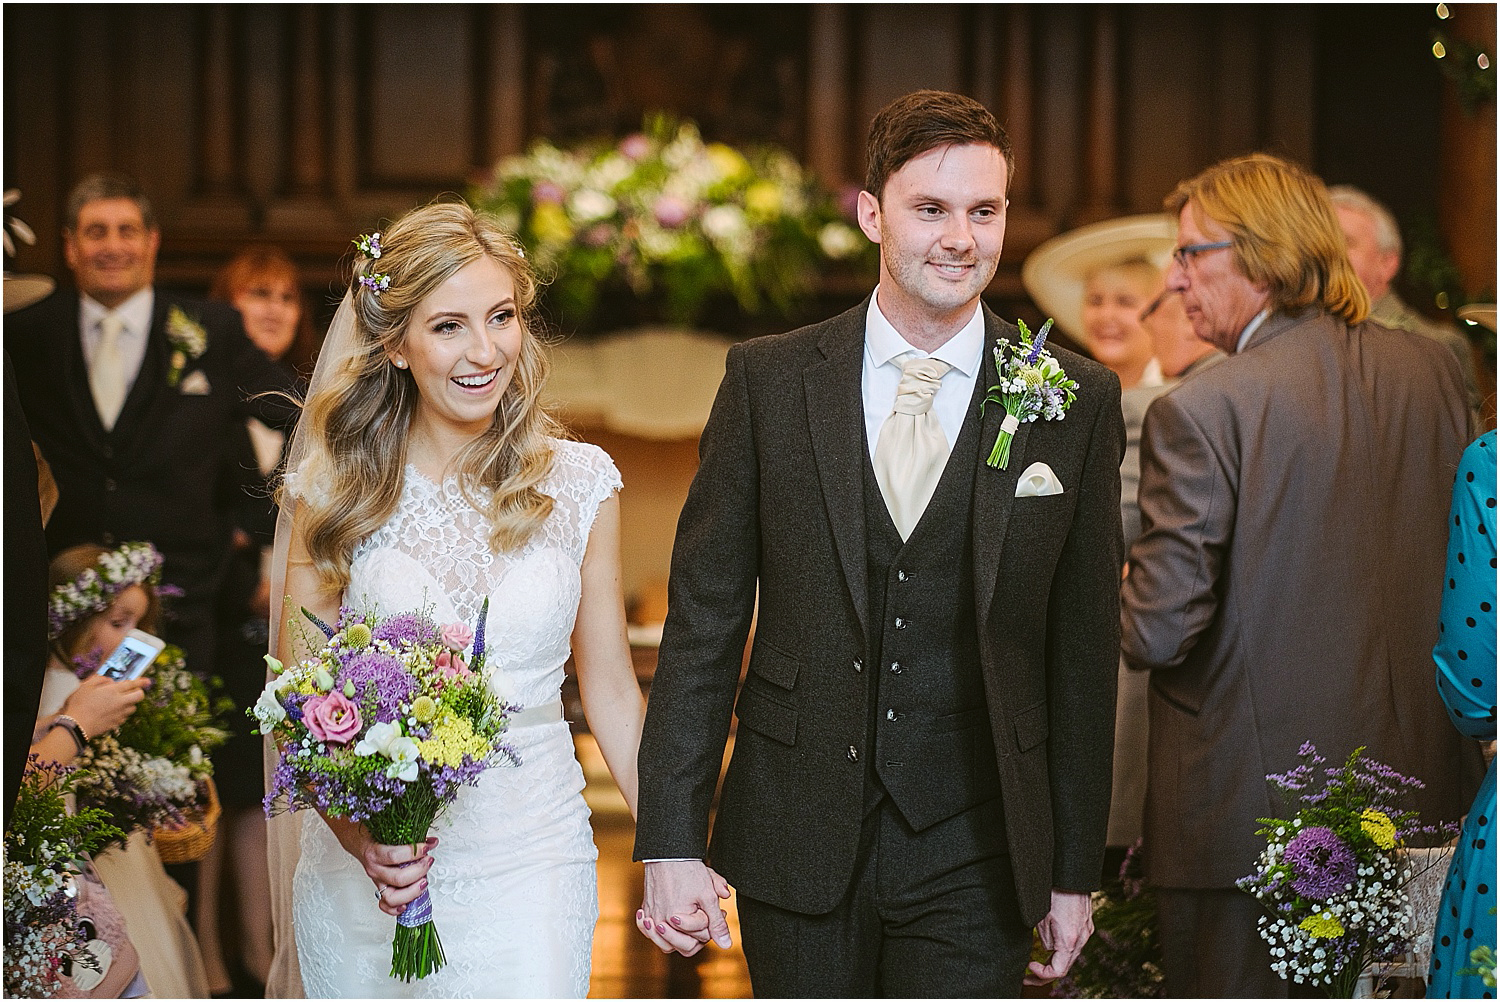 Beamish Hall wedding photography - Laura and Richard_0046.jpg